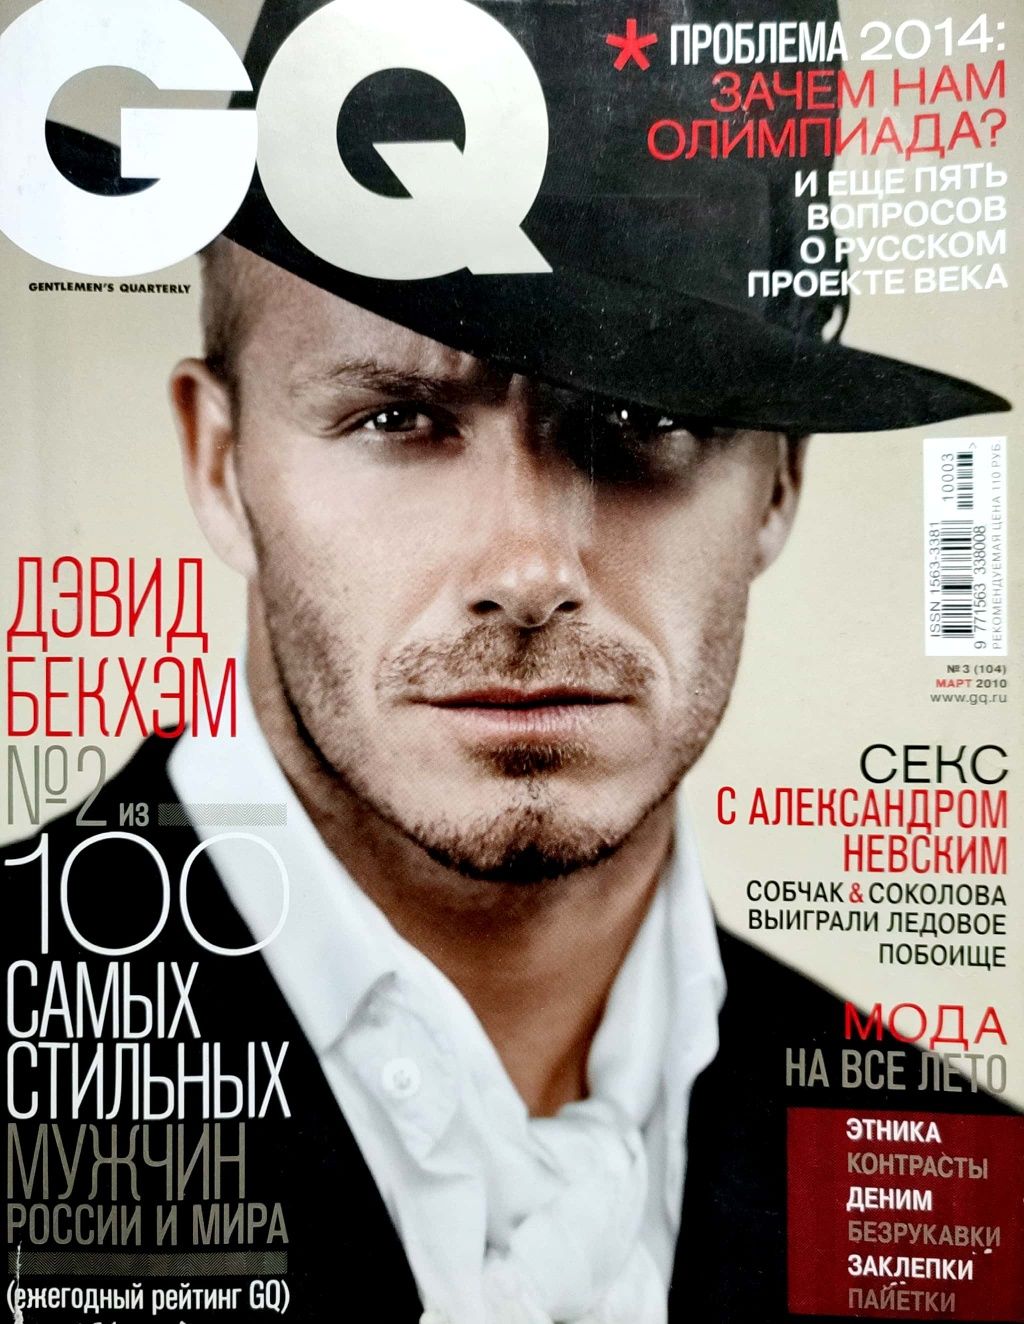 Журнал для чоловіків GQ